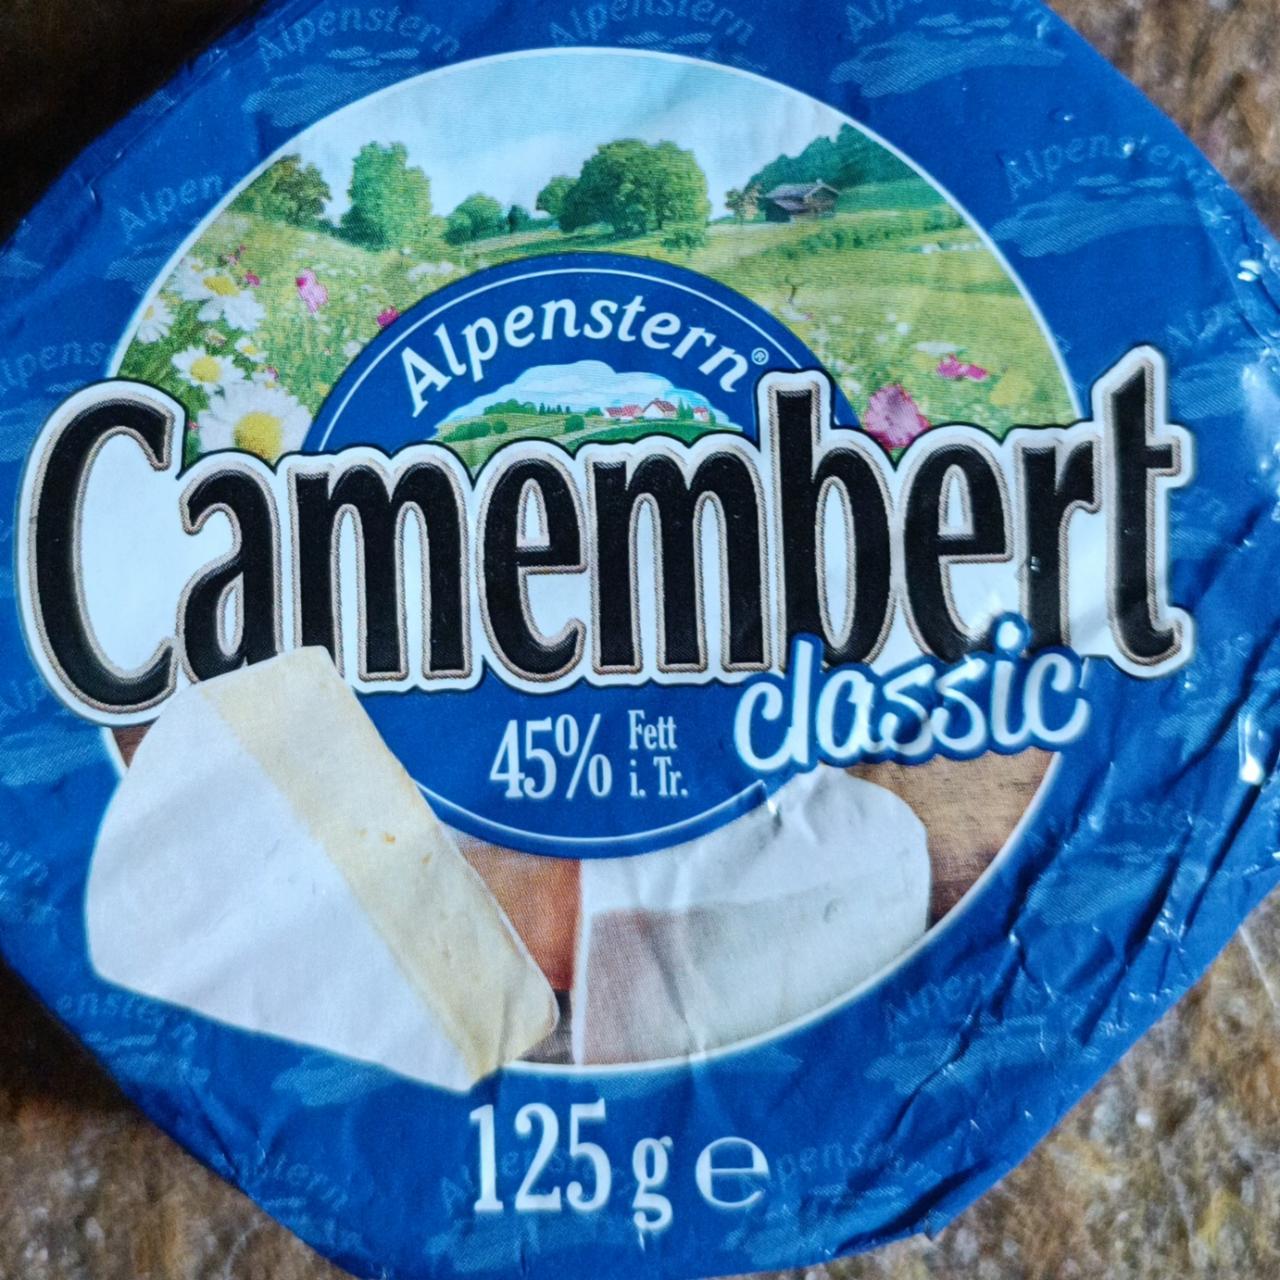 Fotografie - Camembert classic 45% Fett i.Tr. Alpenstern